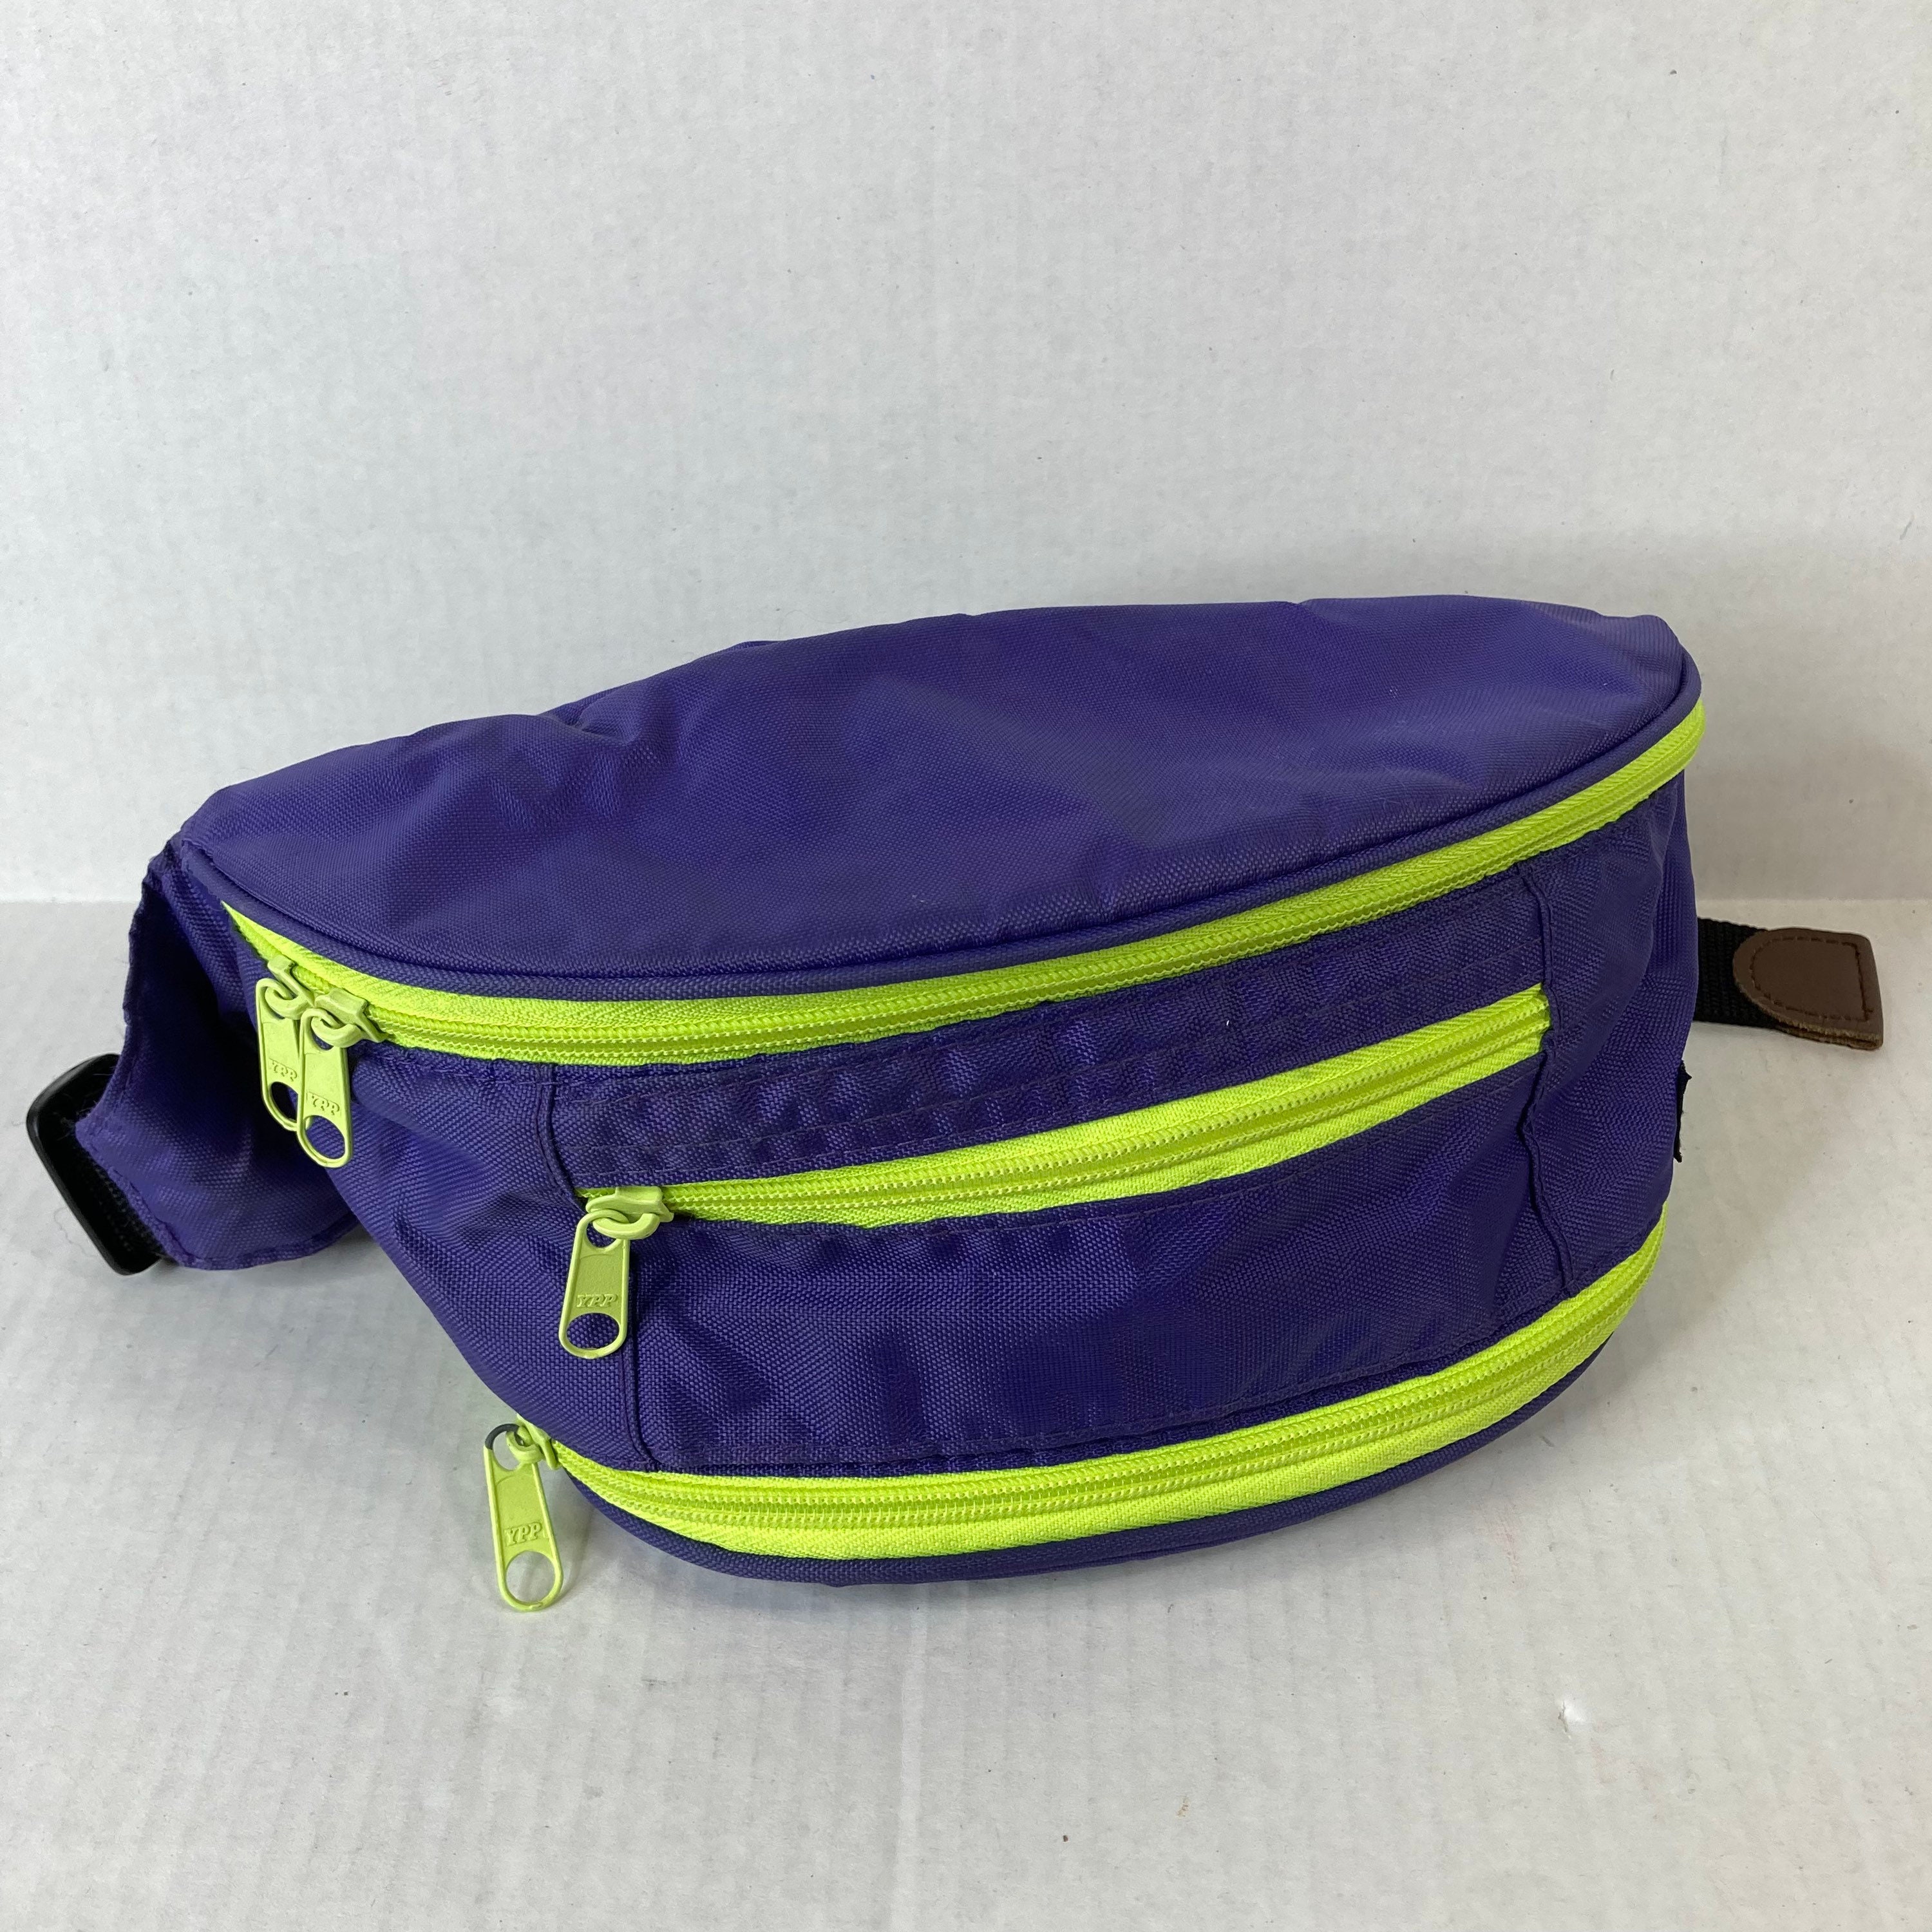 Vintage Lands End Nylon Fanny Pack Belt Bag Purple with | Etsy